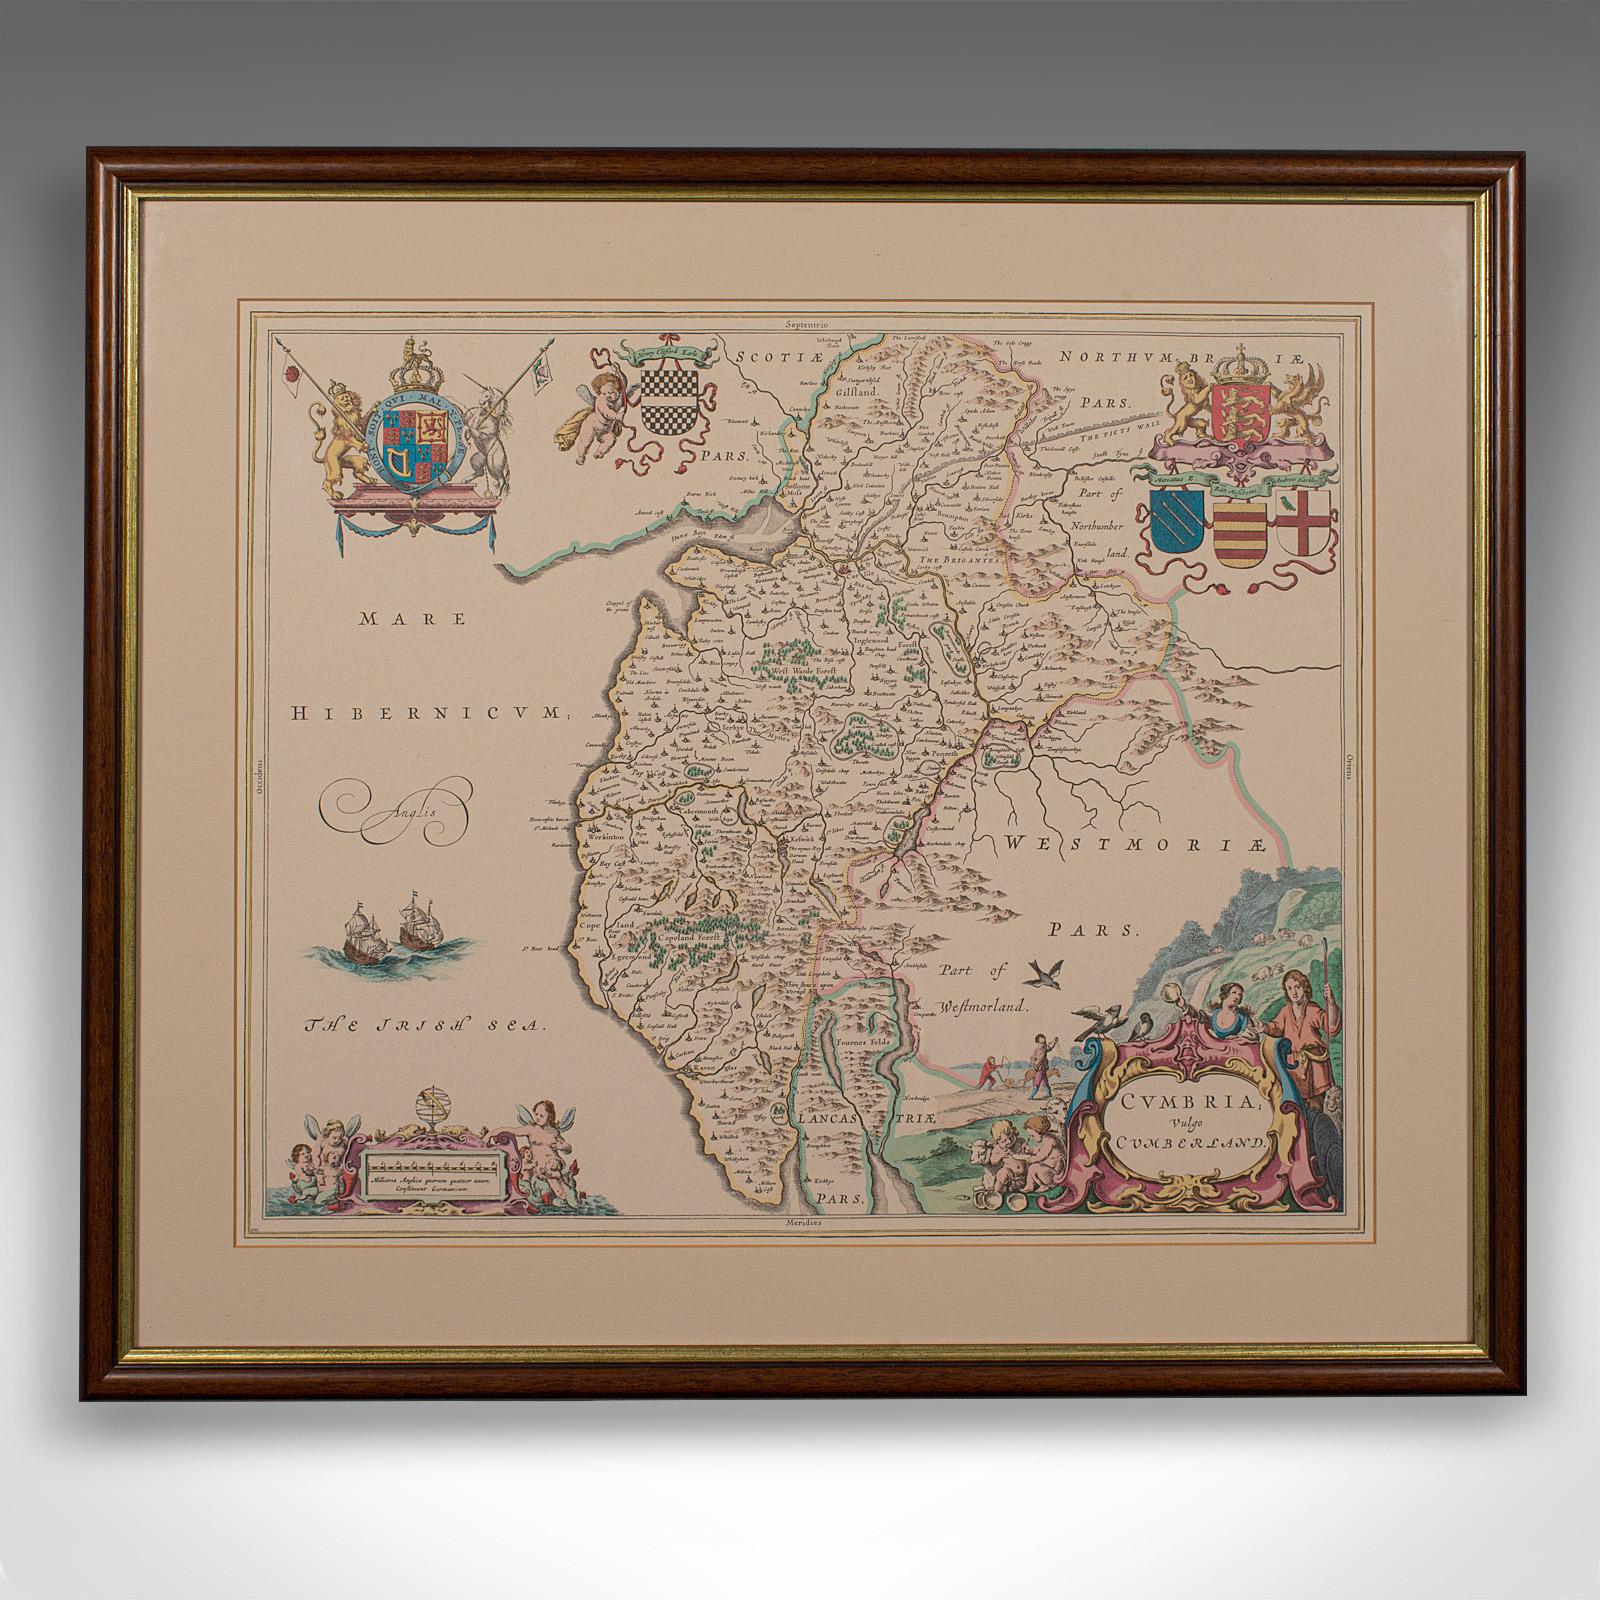 Dies ist eine antike lithografische Karte von Cumbria. Ein englischer, gerahmter Kupferstich von kartografischem Interesse aus dem frühen 18. Jahrhundert und später.

Charmante Lithografie von Cumbria mit ansprechenden dekorativen Schnörkeln
Mit